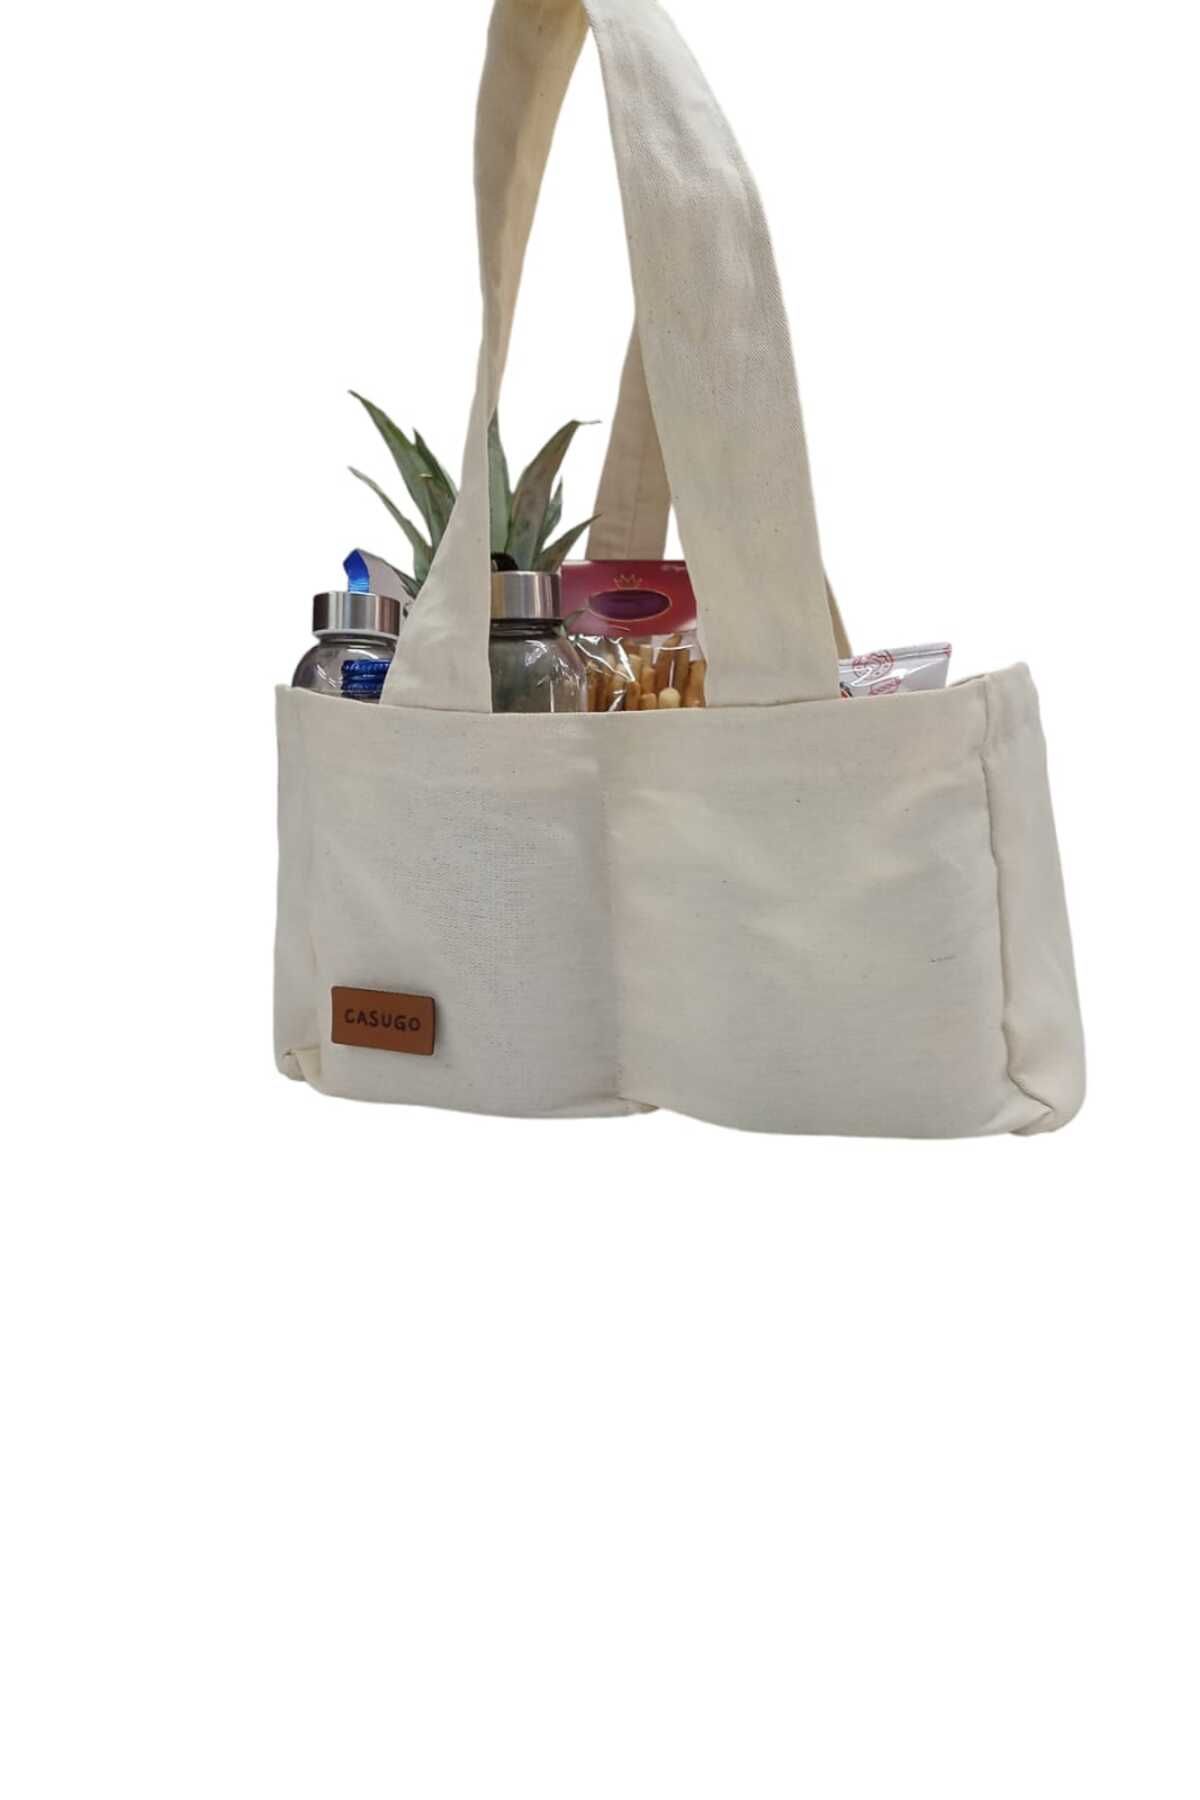 CASUGO Bölmeli Bez Alışveriş Çantası ,Bölmeli Pazar Piknik Çantası ,Çok amaçlı bölmeli çanta - EKRU - Small